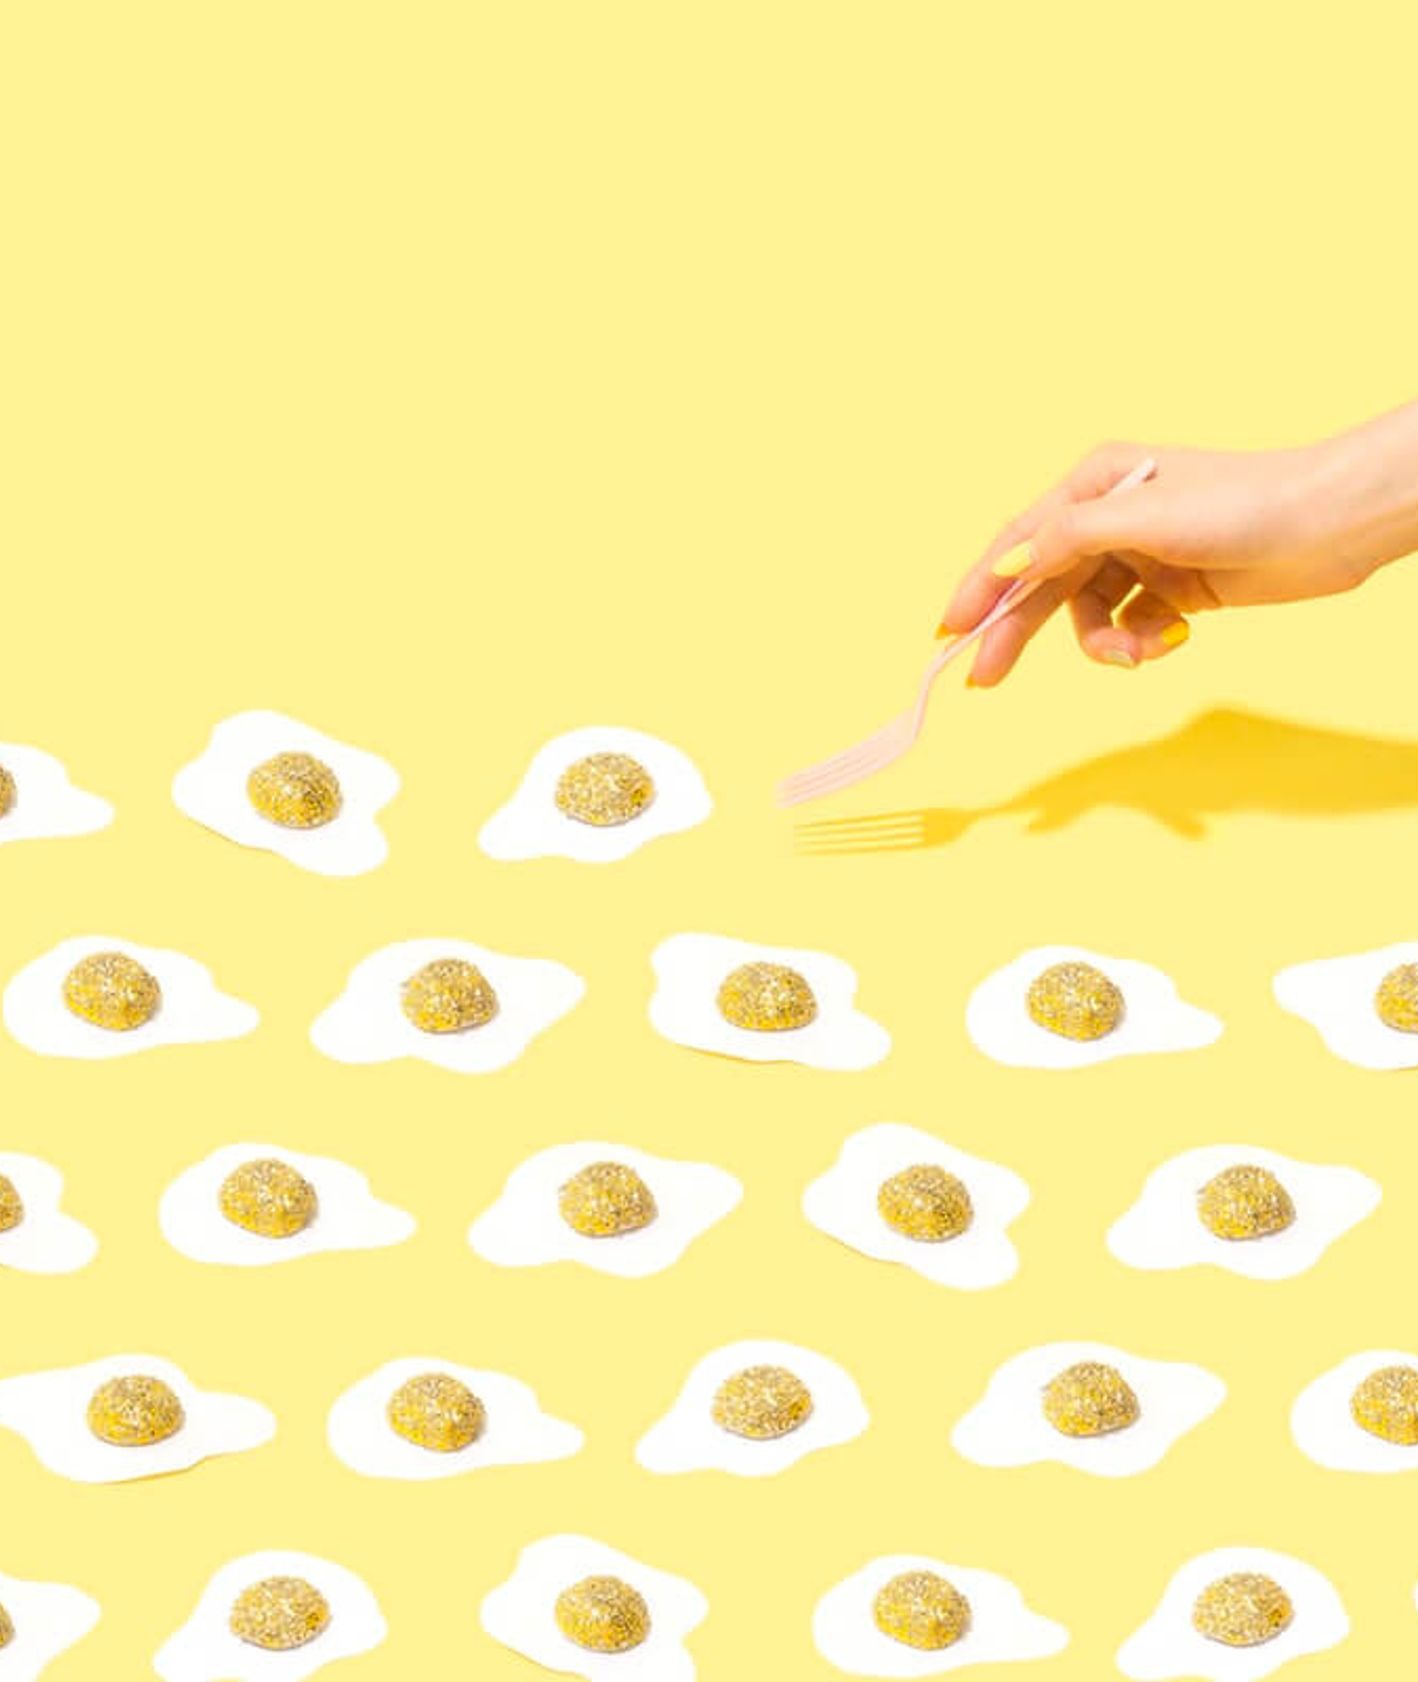 Artystyczne zdjęcie imitacji jajek sadzonych - nowoczesna żywność (fot. Amy Shamblen﻿)